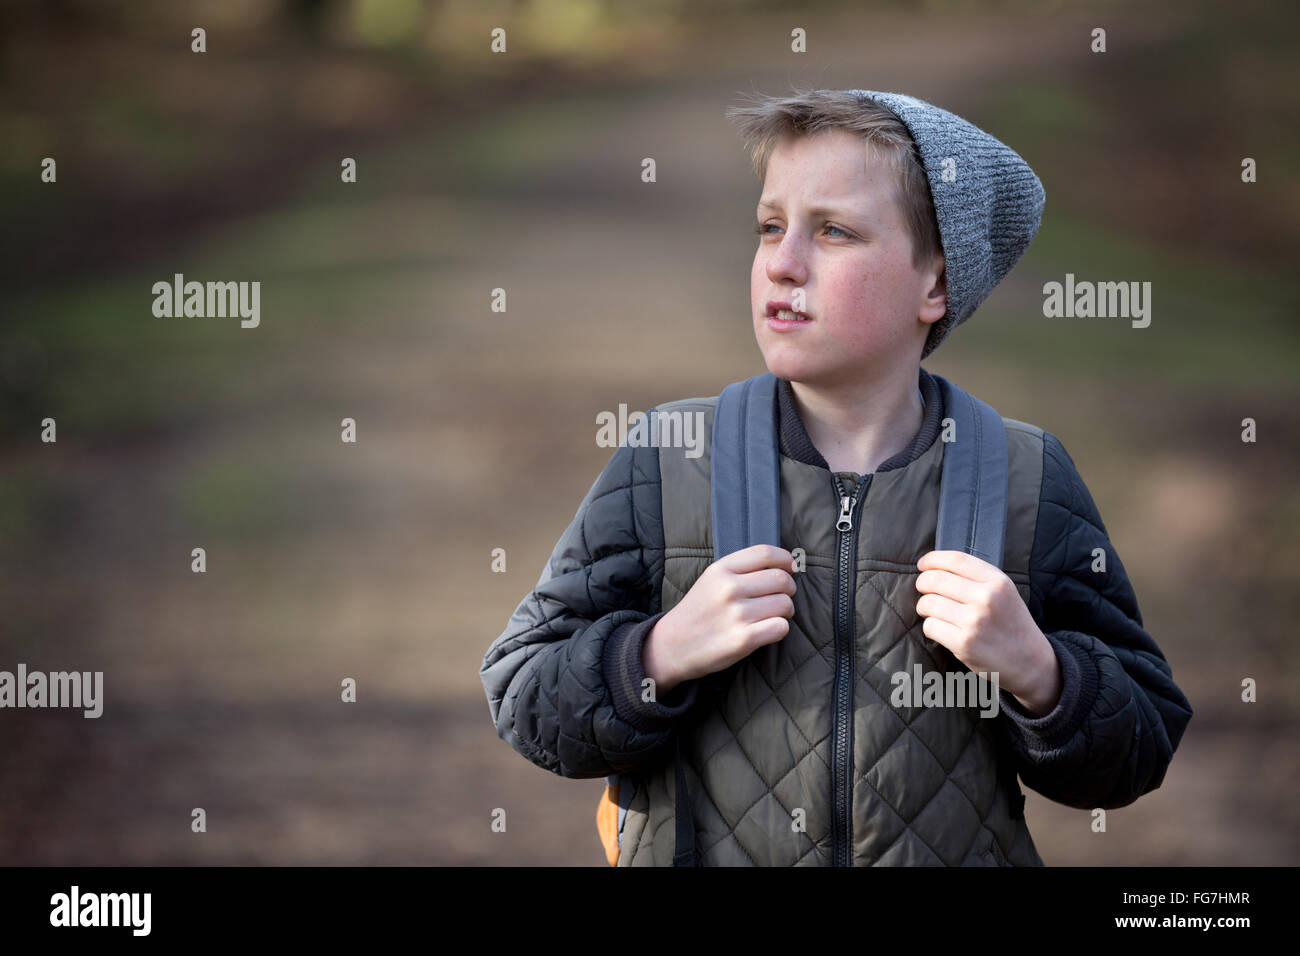 Un muchacho con una mochila caminando en el bosque Foto de stock